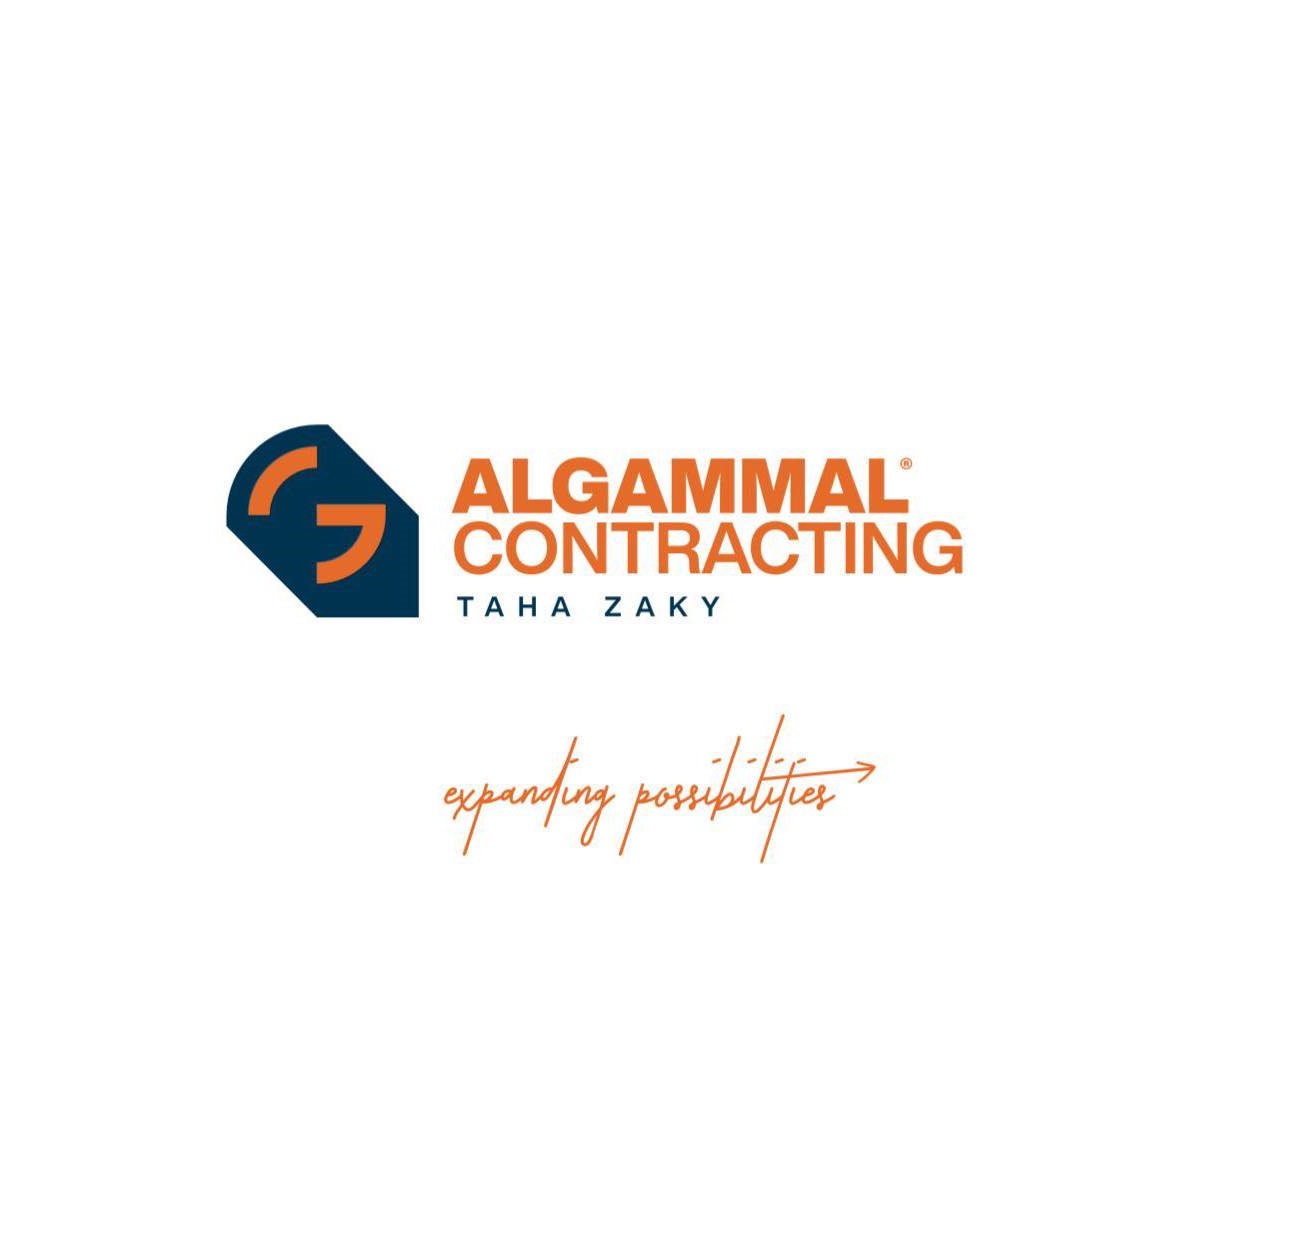 Al Gammal Contracting